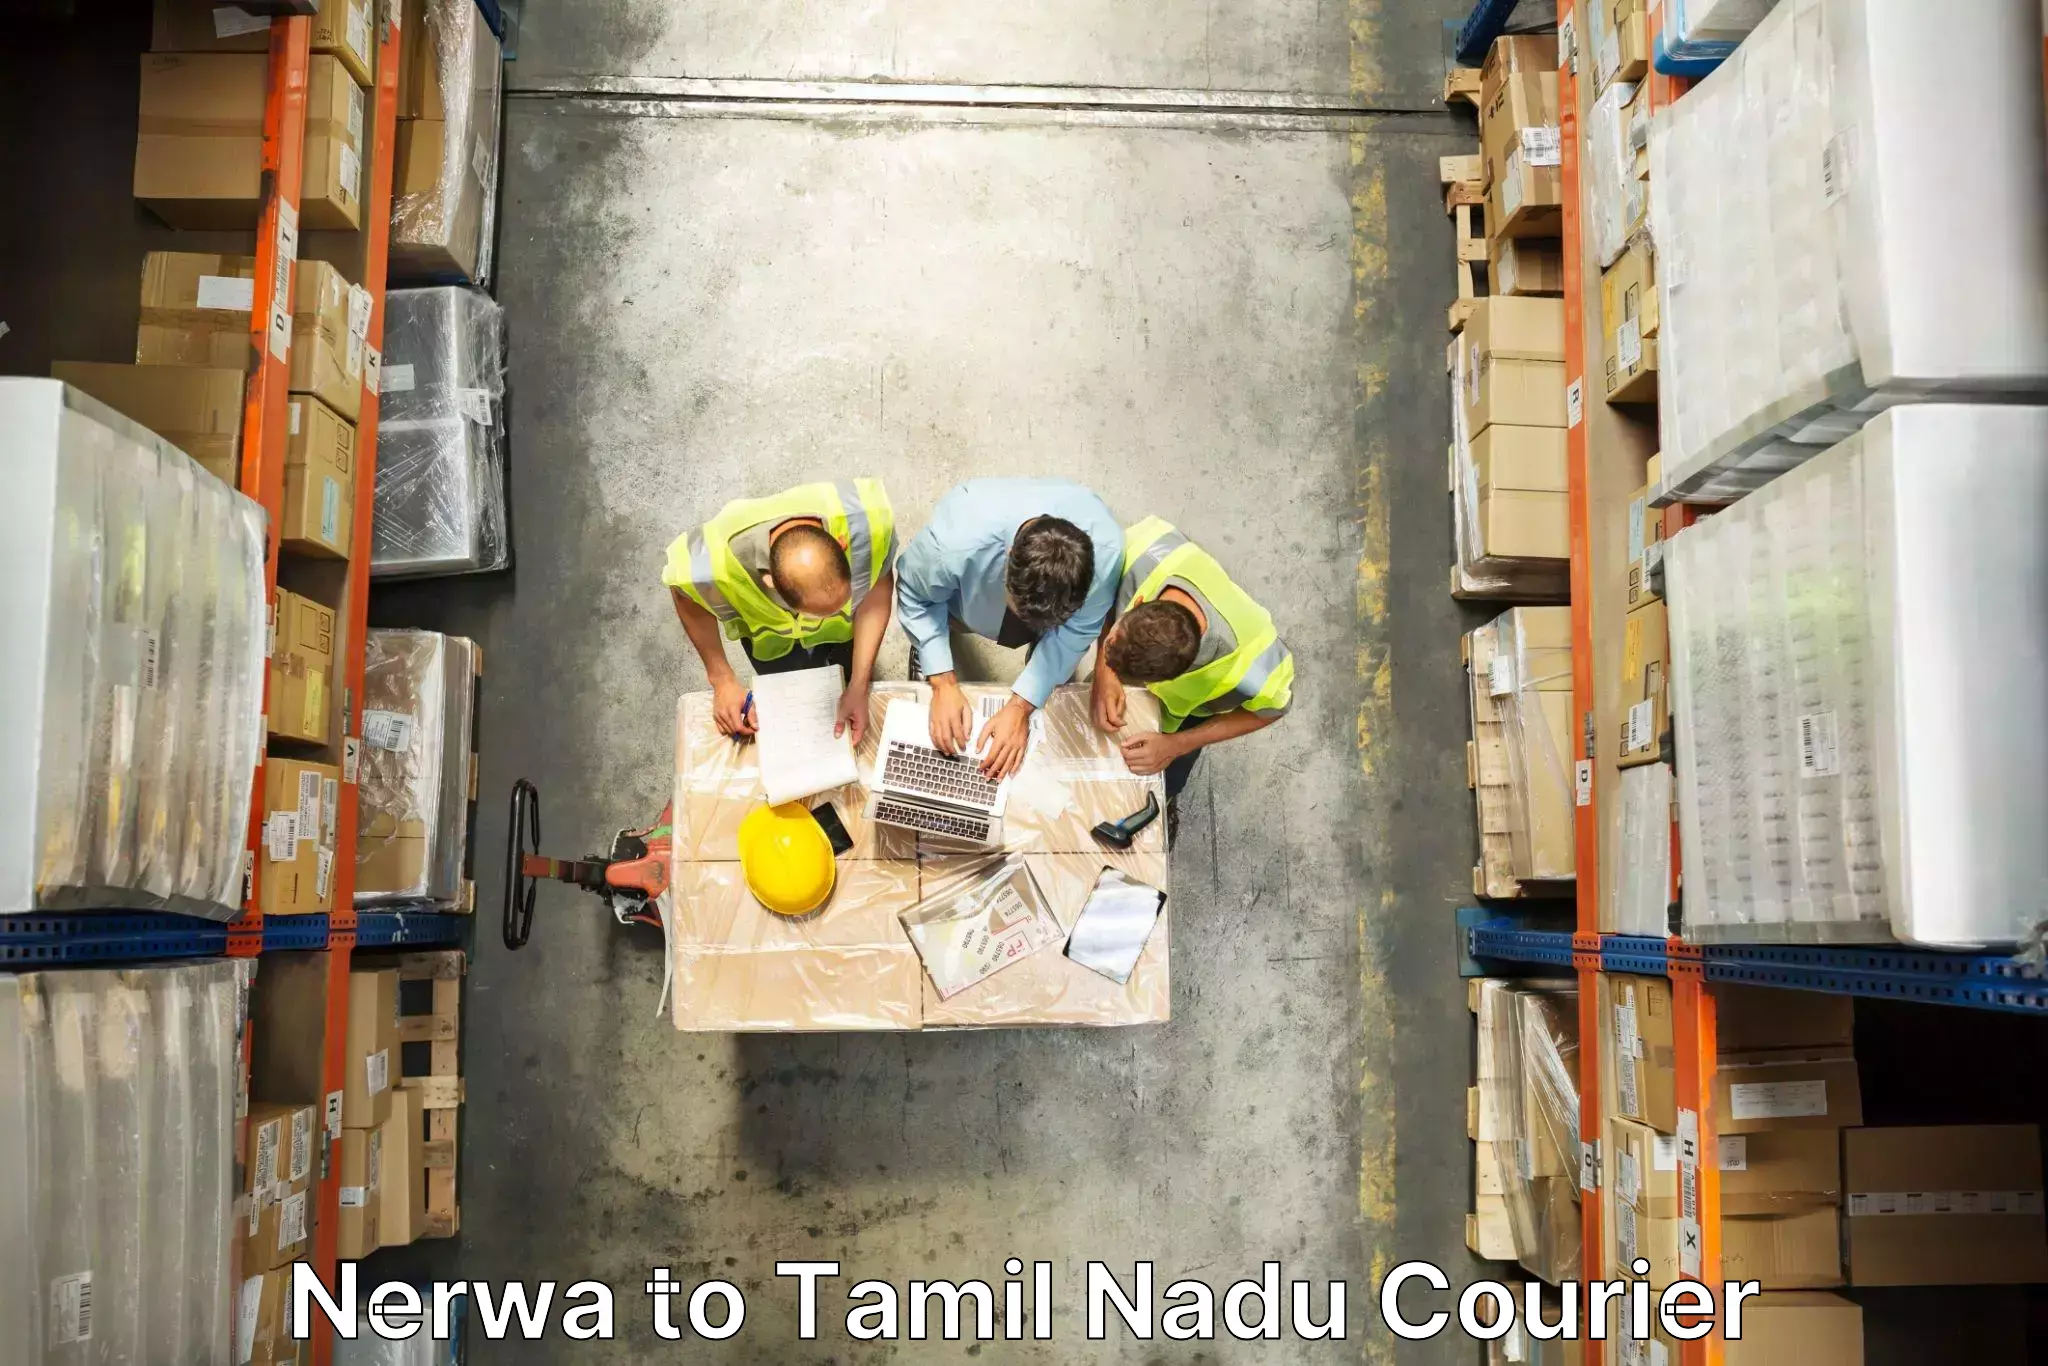 Personalized moving and storage in Nerwa to Thiruvadanai